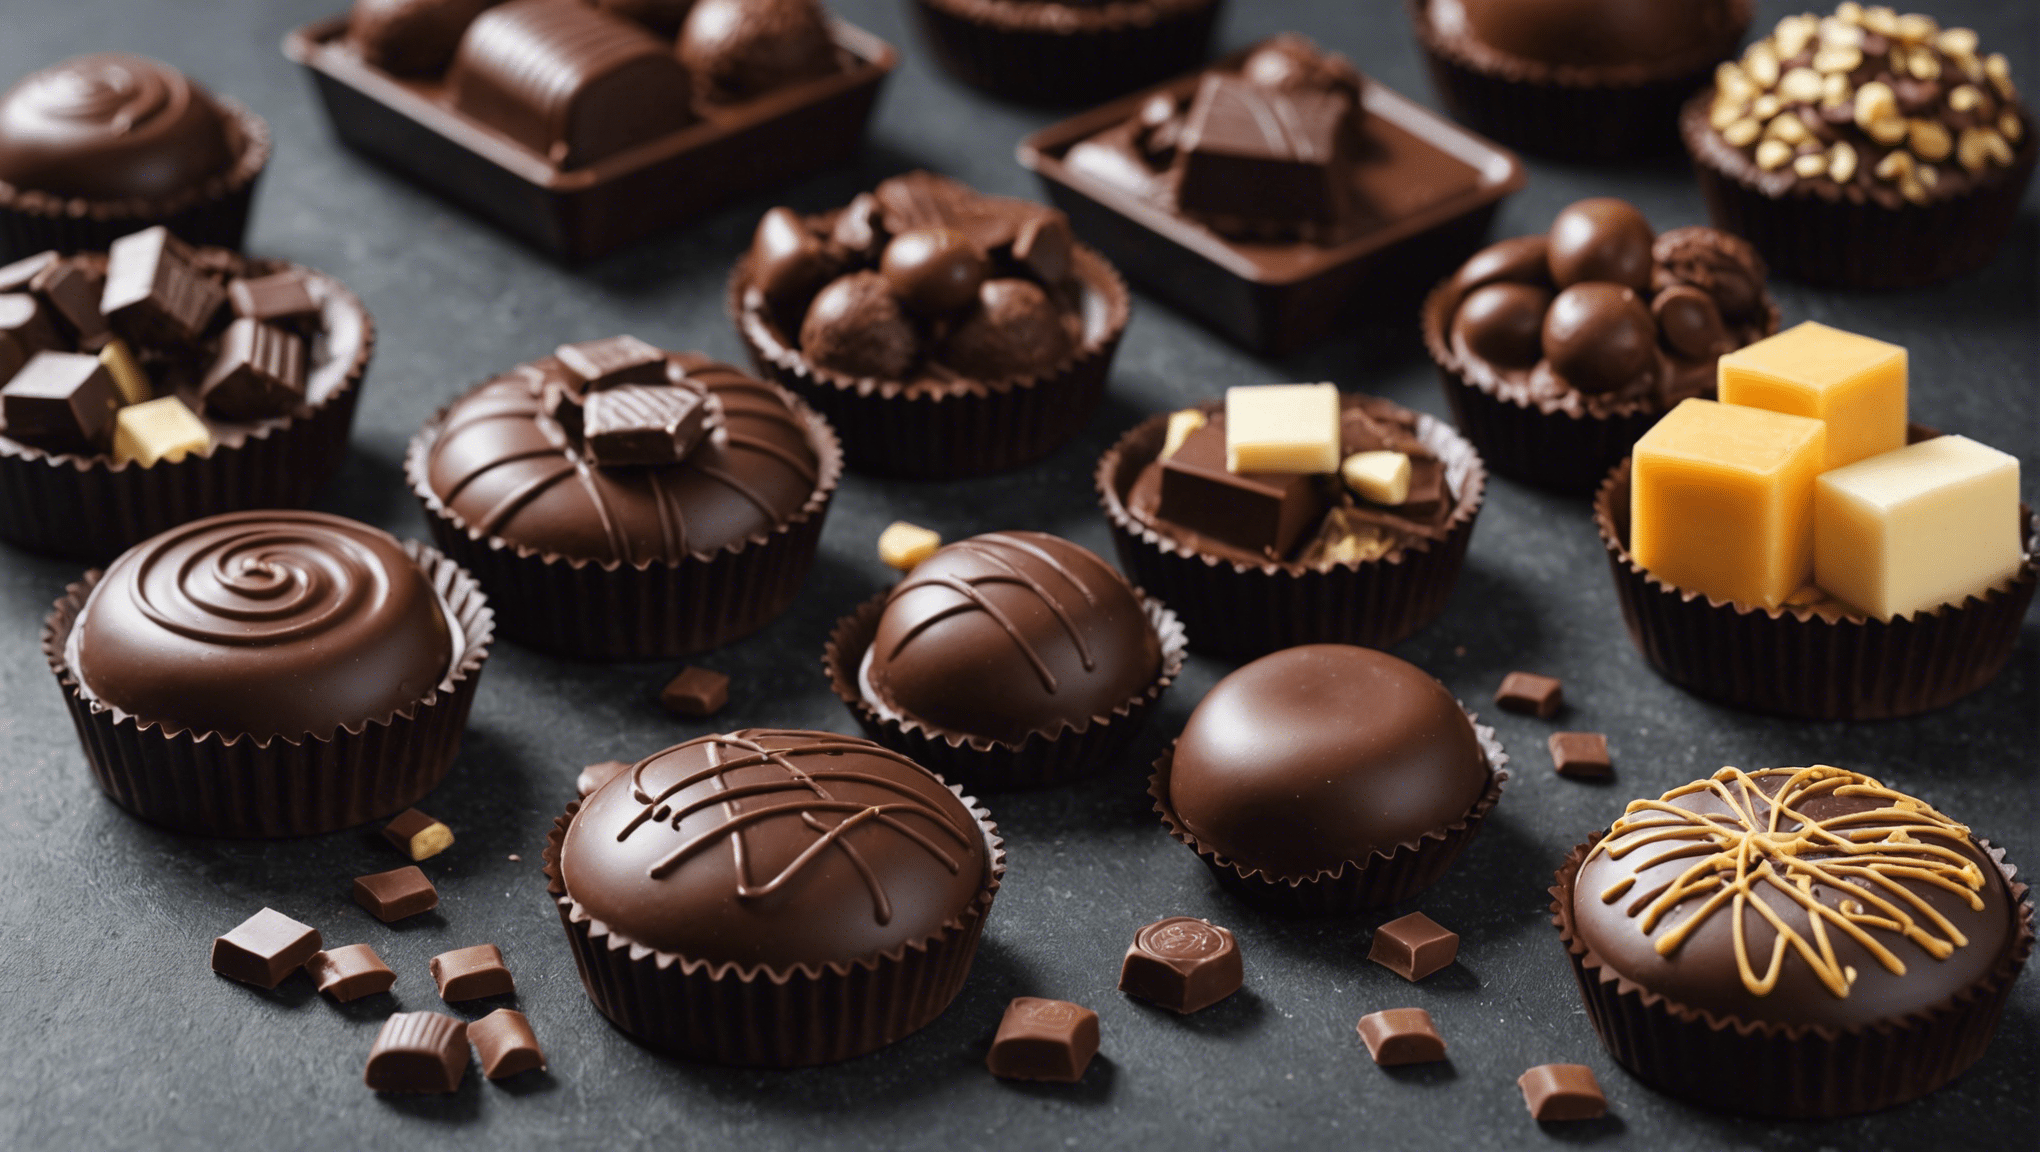 découvrez les meilleures manières de savourer les délices chocolatés et laissez-vous emporter par une expérience gustative inoubliable.